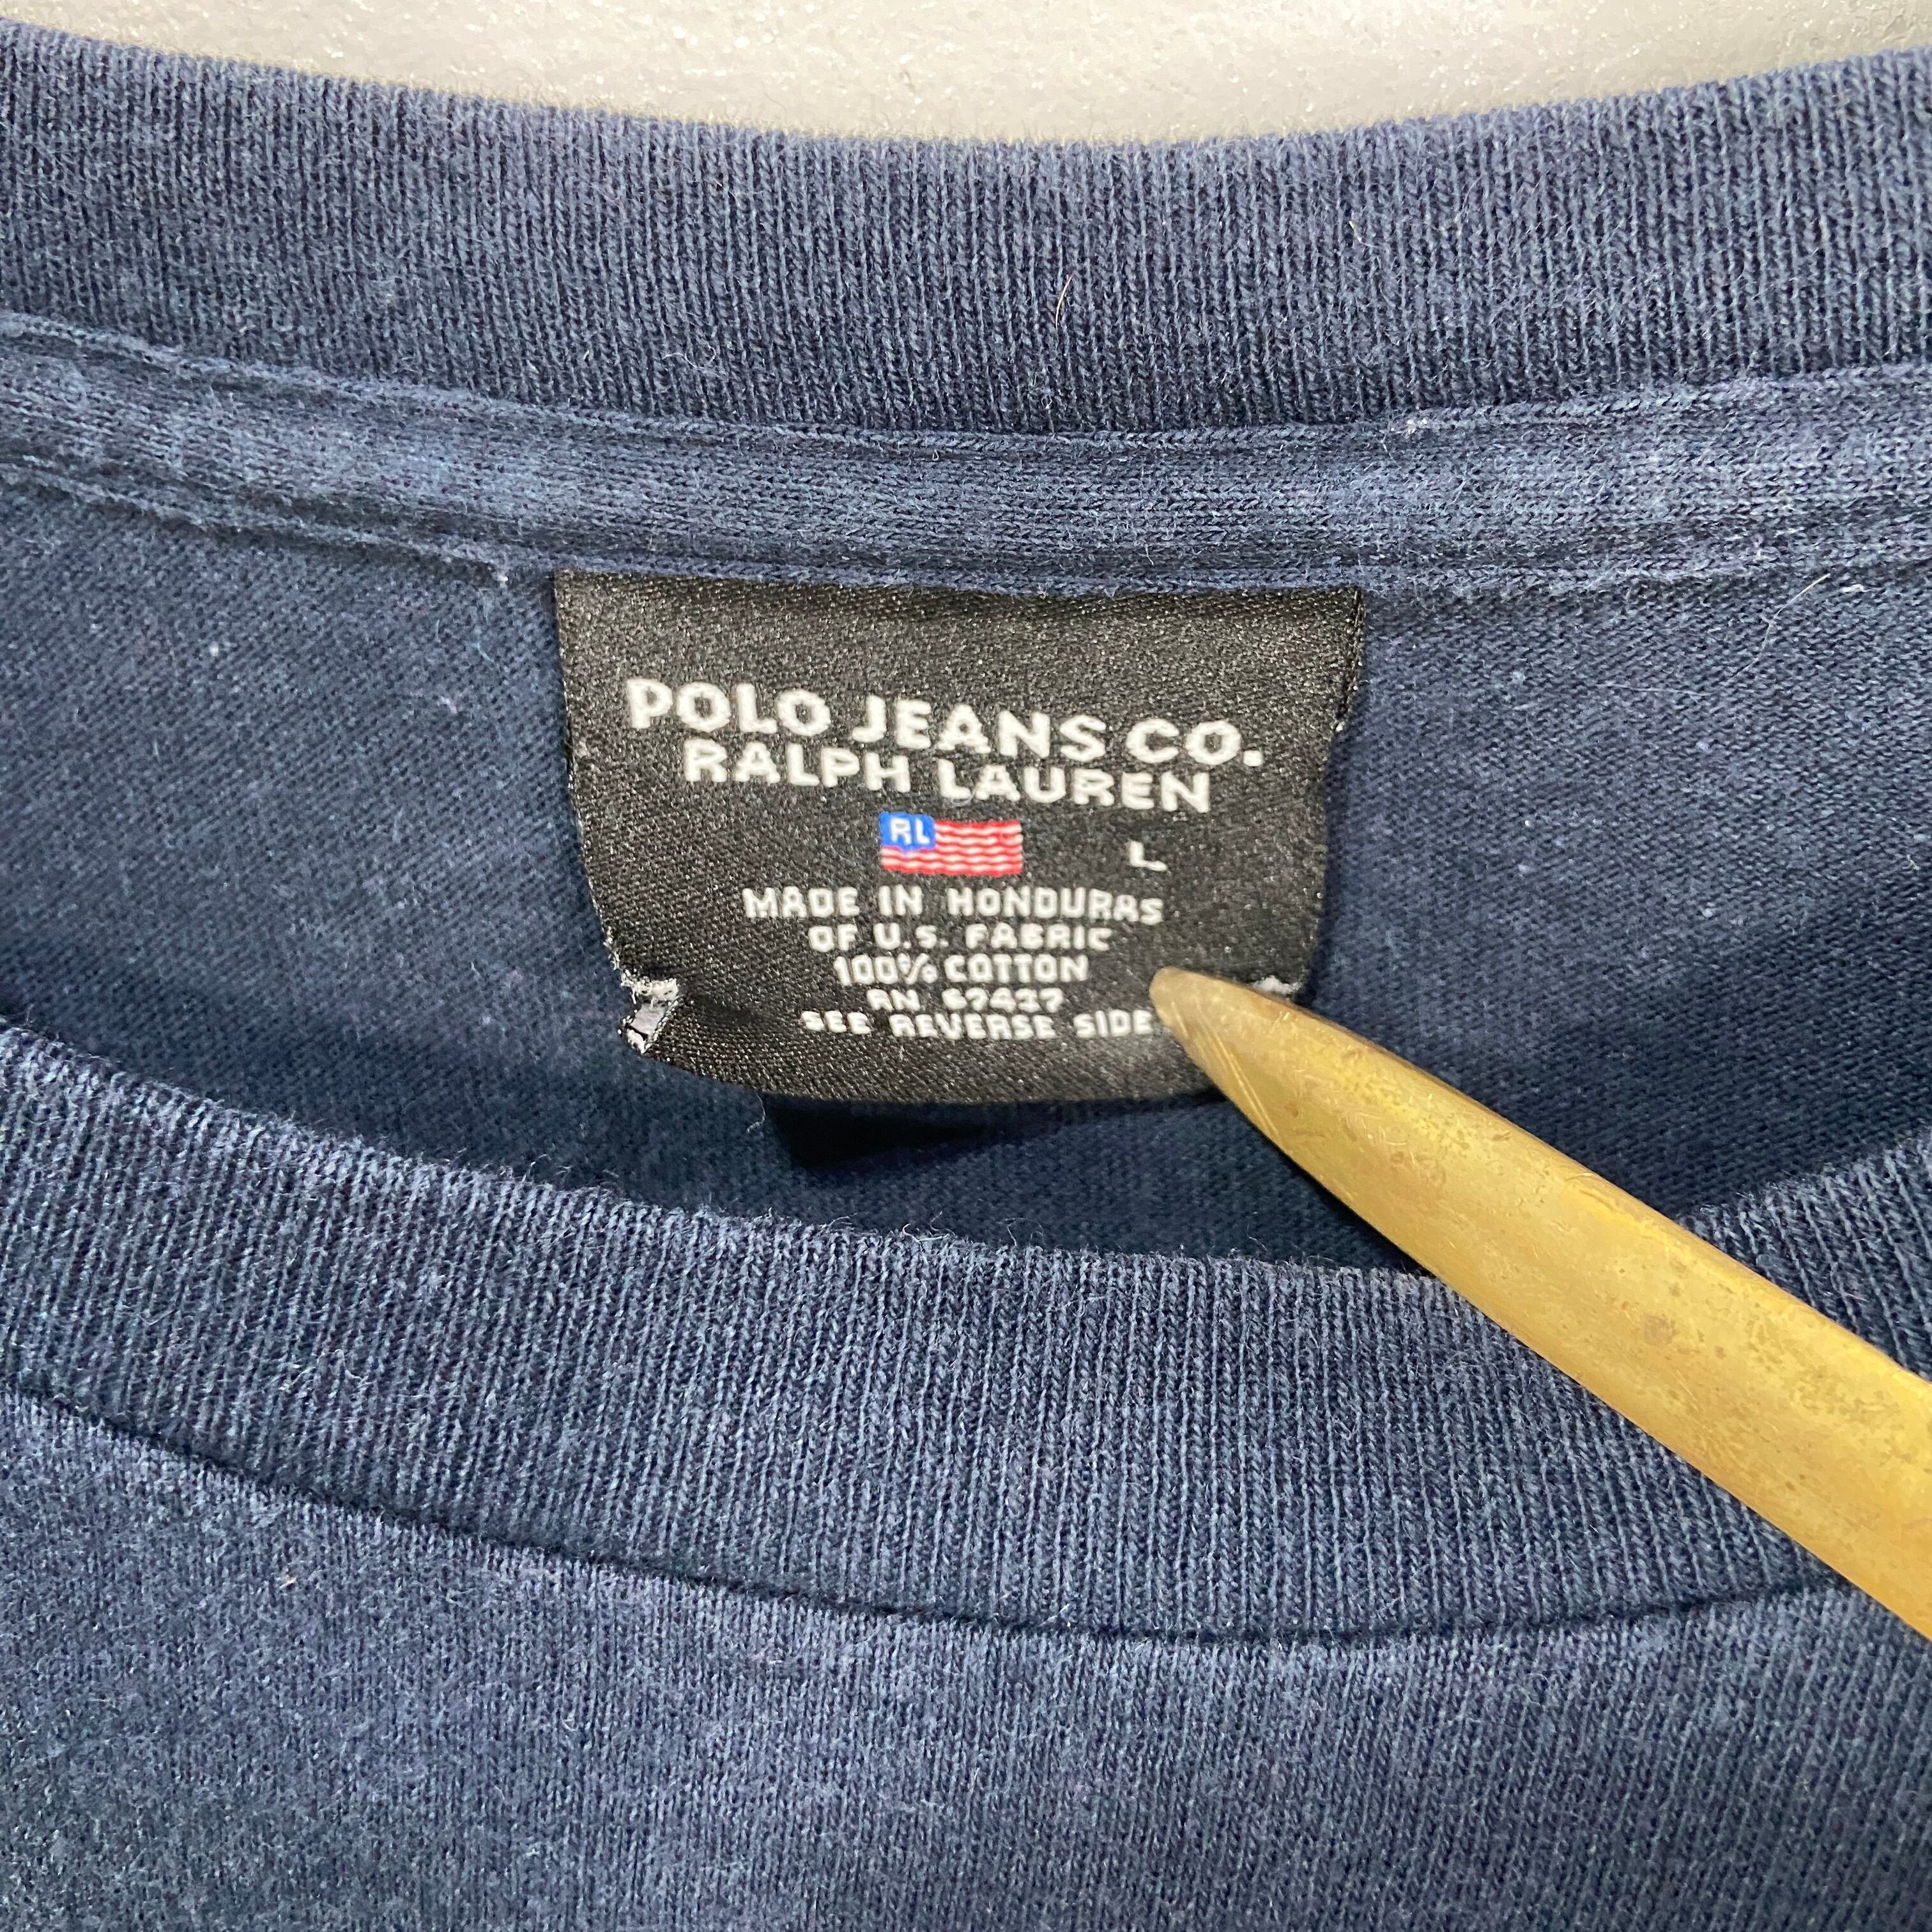 【激レア】USA製polo jeans' co星条旗 刺繍ロゴスウェットパーカー